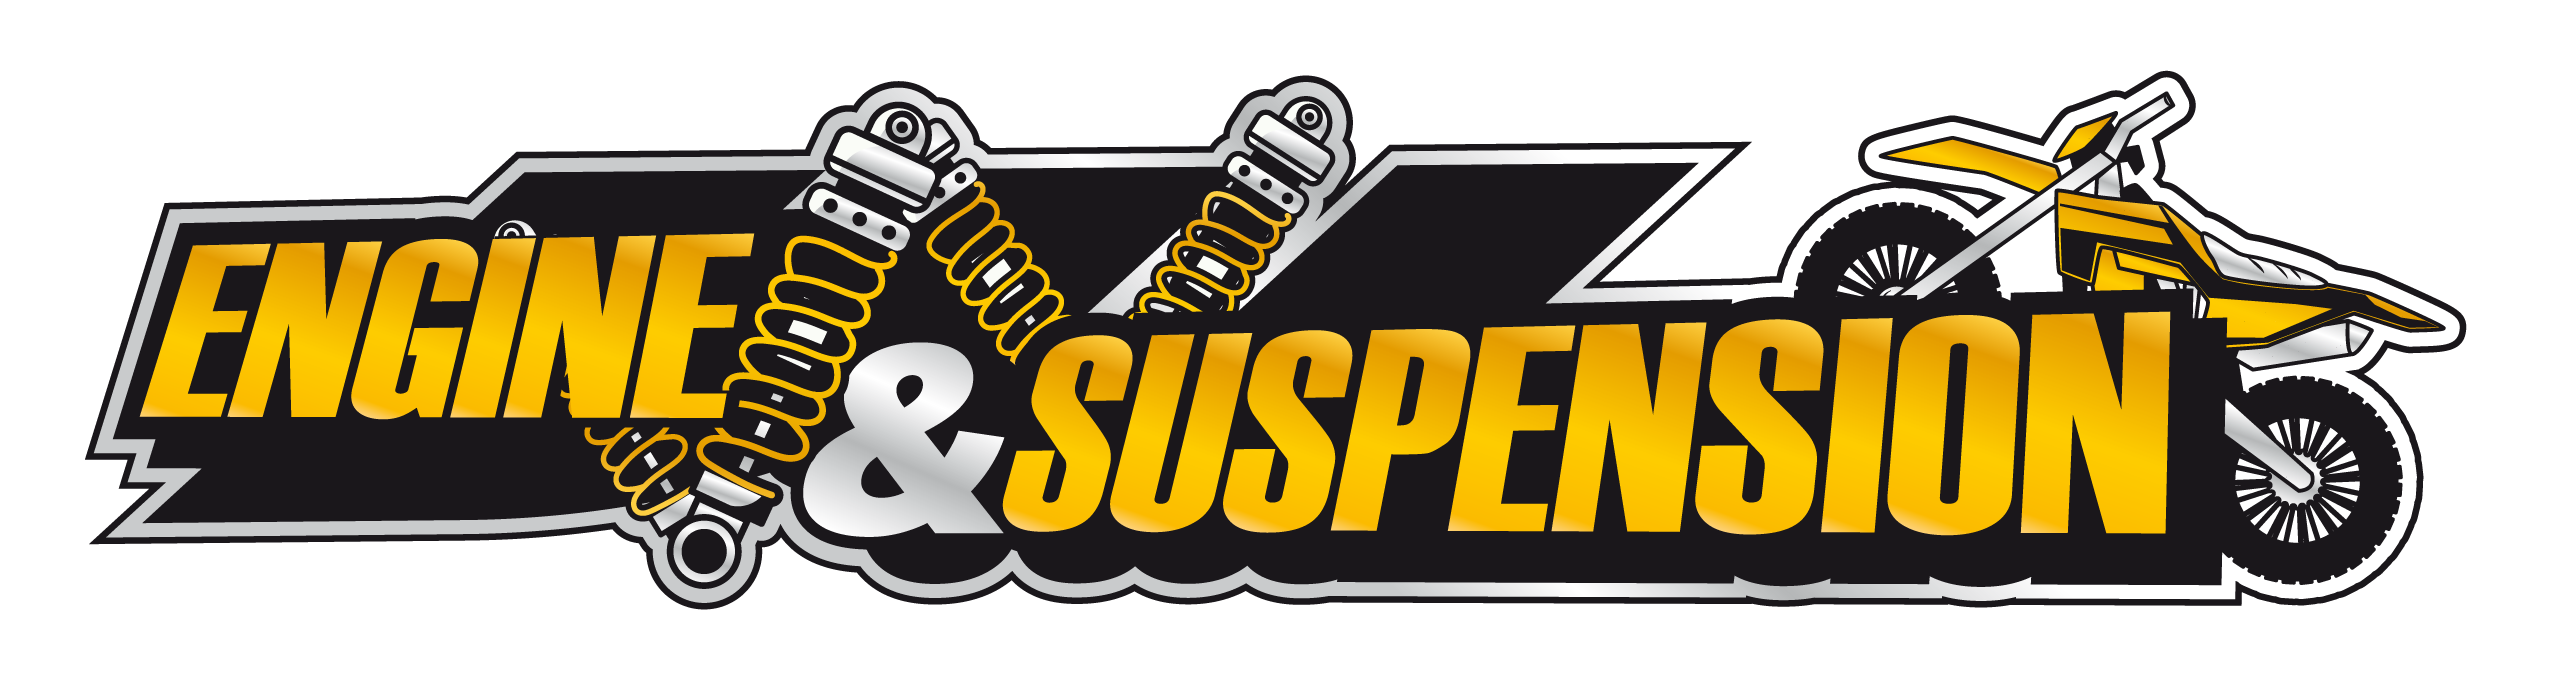 Engine & Suspension Motocross værksted